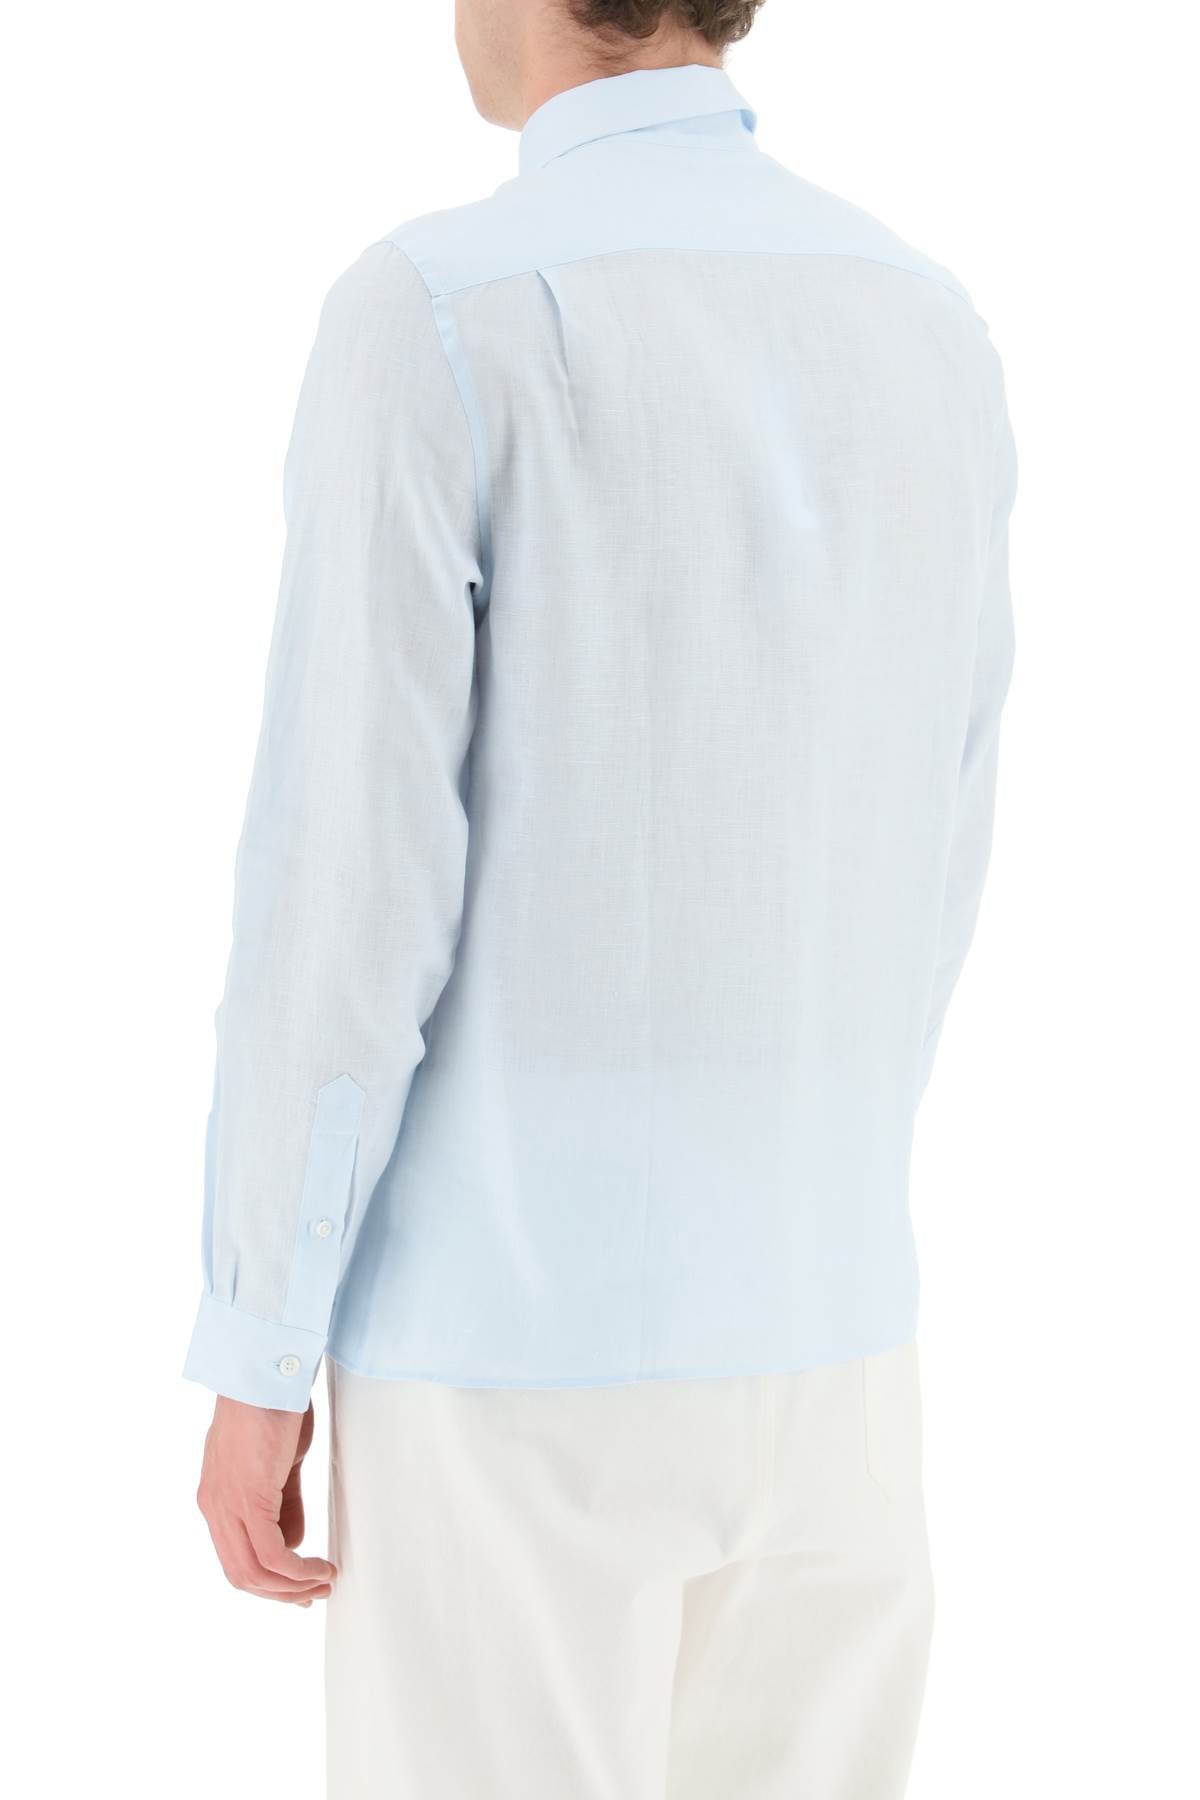 Lacoste Light Linen Shirt   Celeste